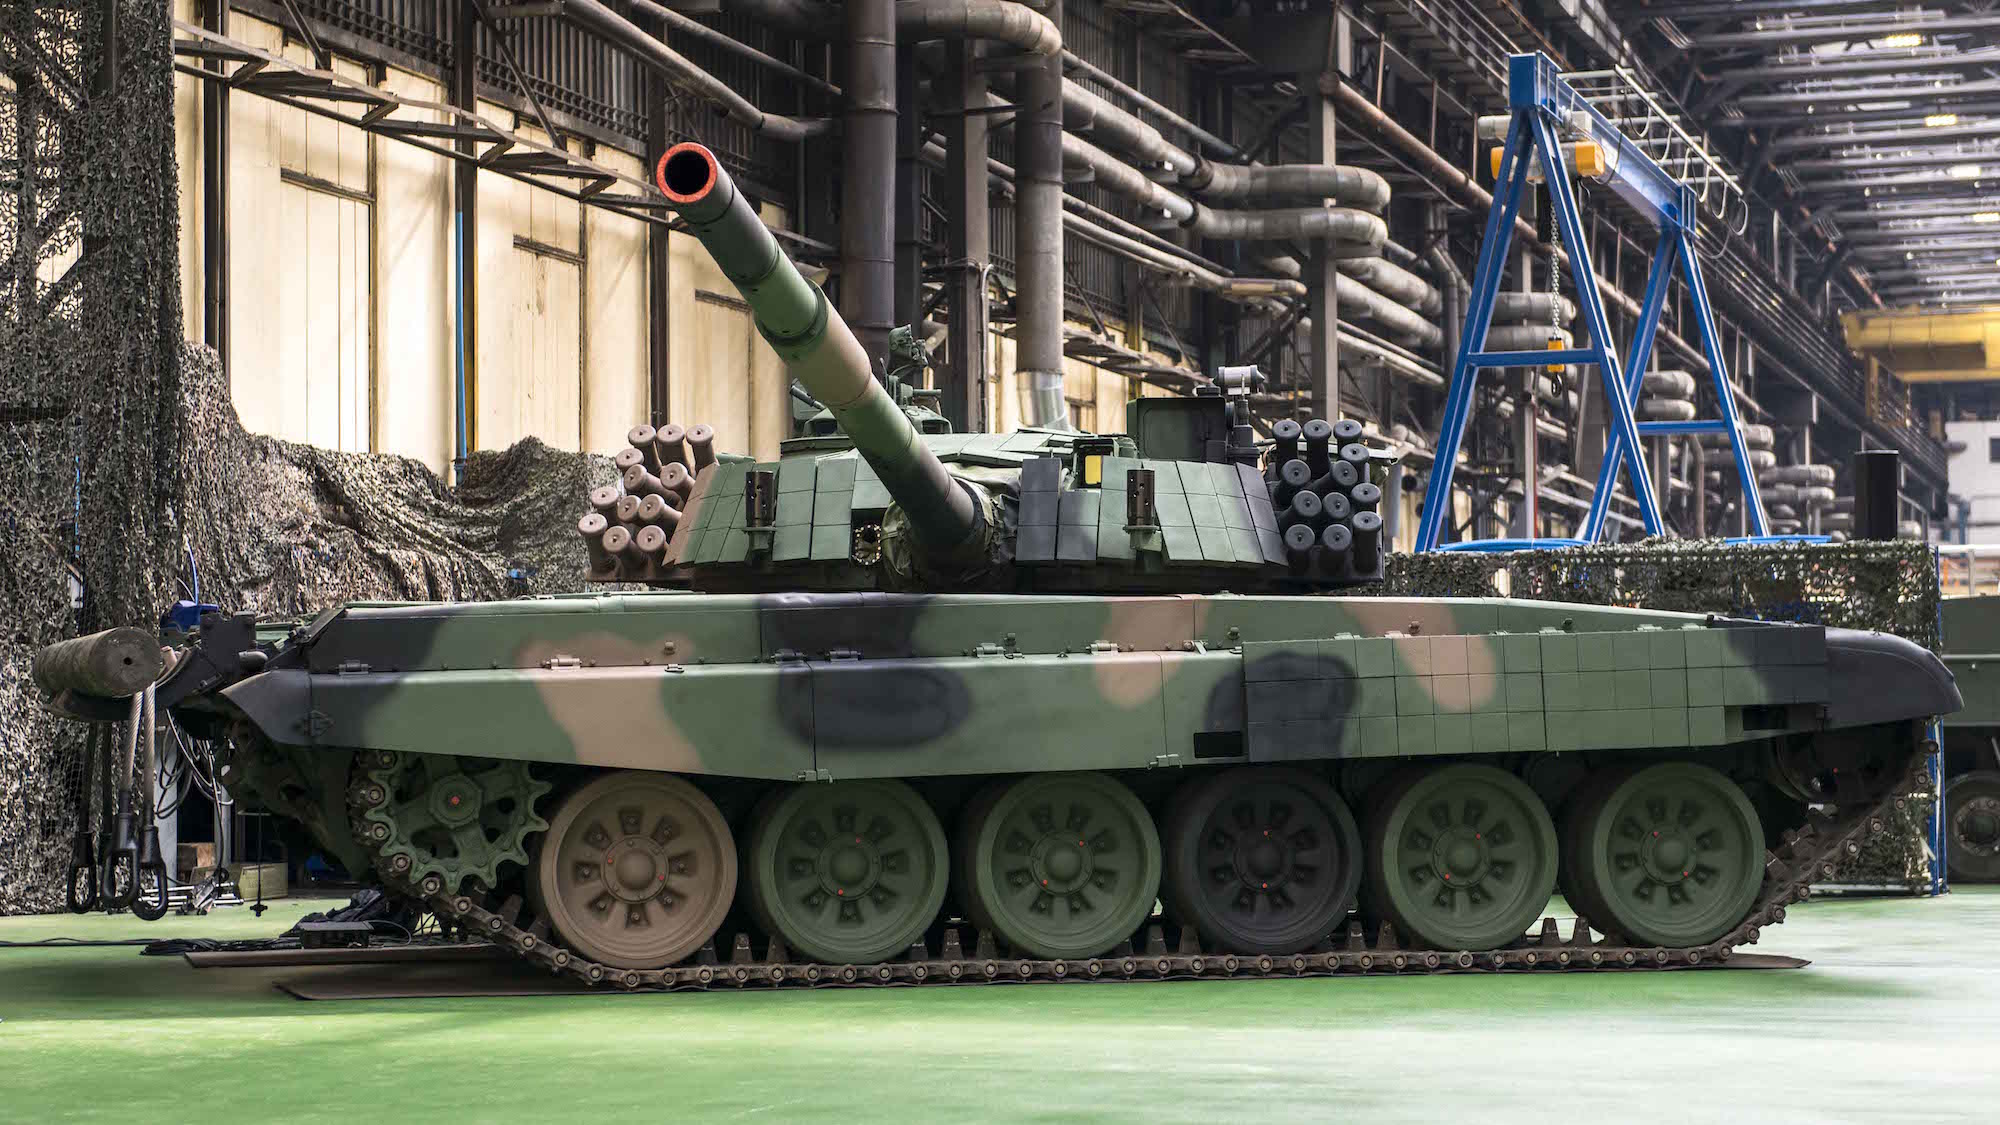 Czołg PT-91 Twardy podczas podpisania umowy na modyfikację T-72. Fot. Mirosław Mróz/Defence24.pl